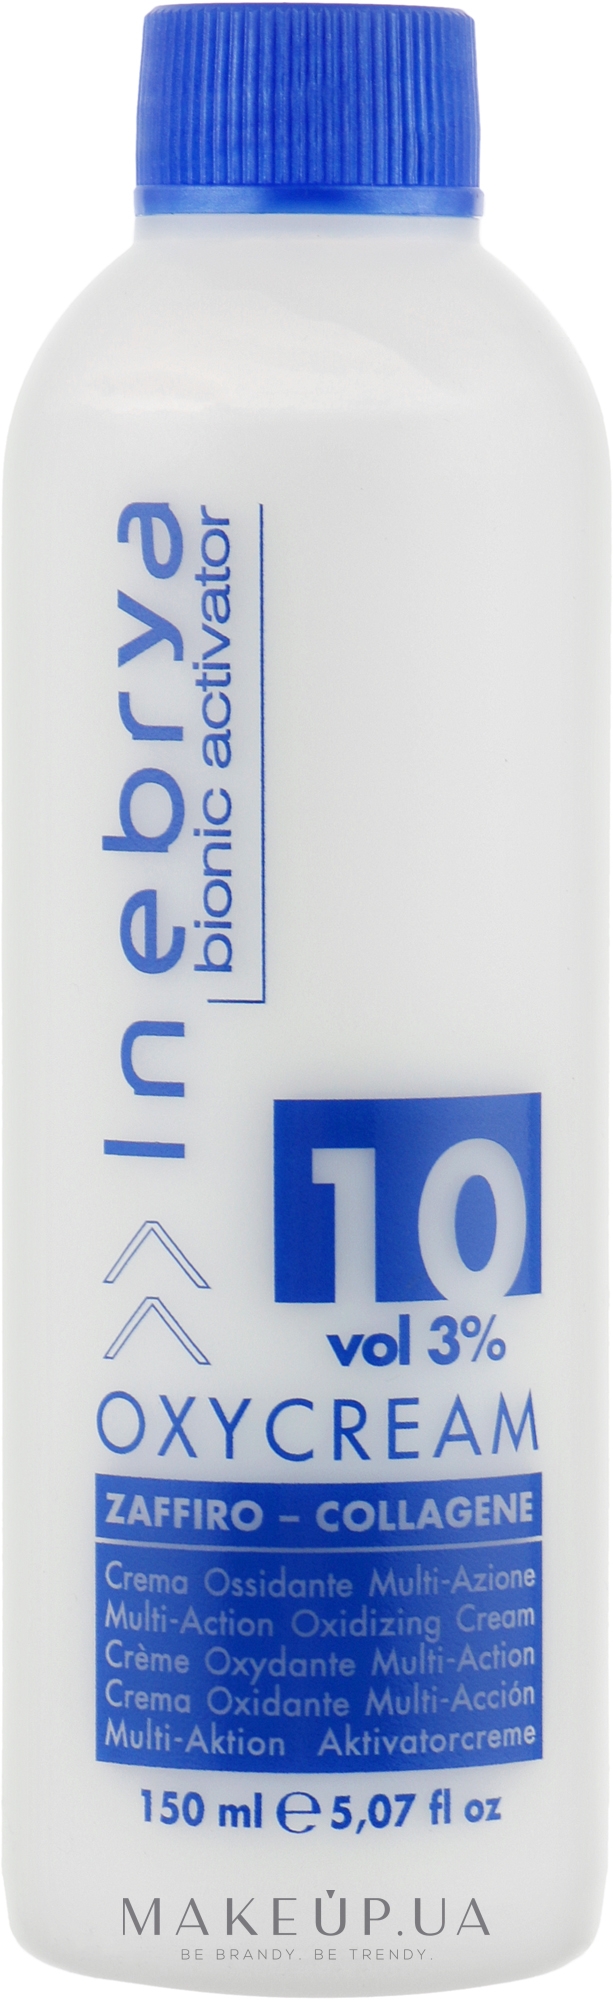 Окси-крем "Сапфир-коллаген" 10, 3% - Inebrya Bionic Activator Oxycream 10 Vol 3% — фото 150ml